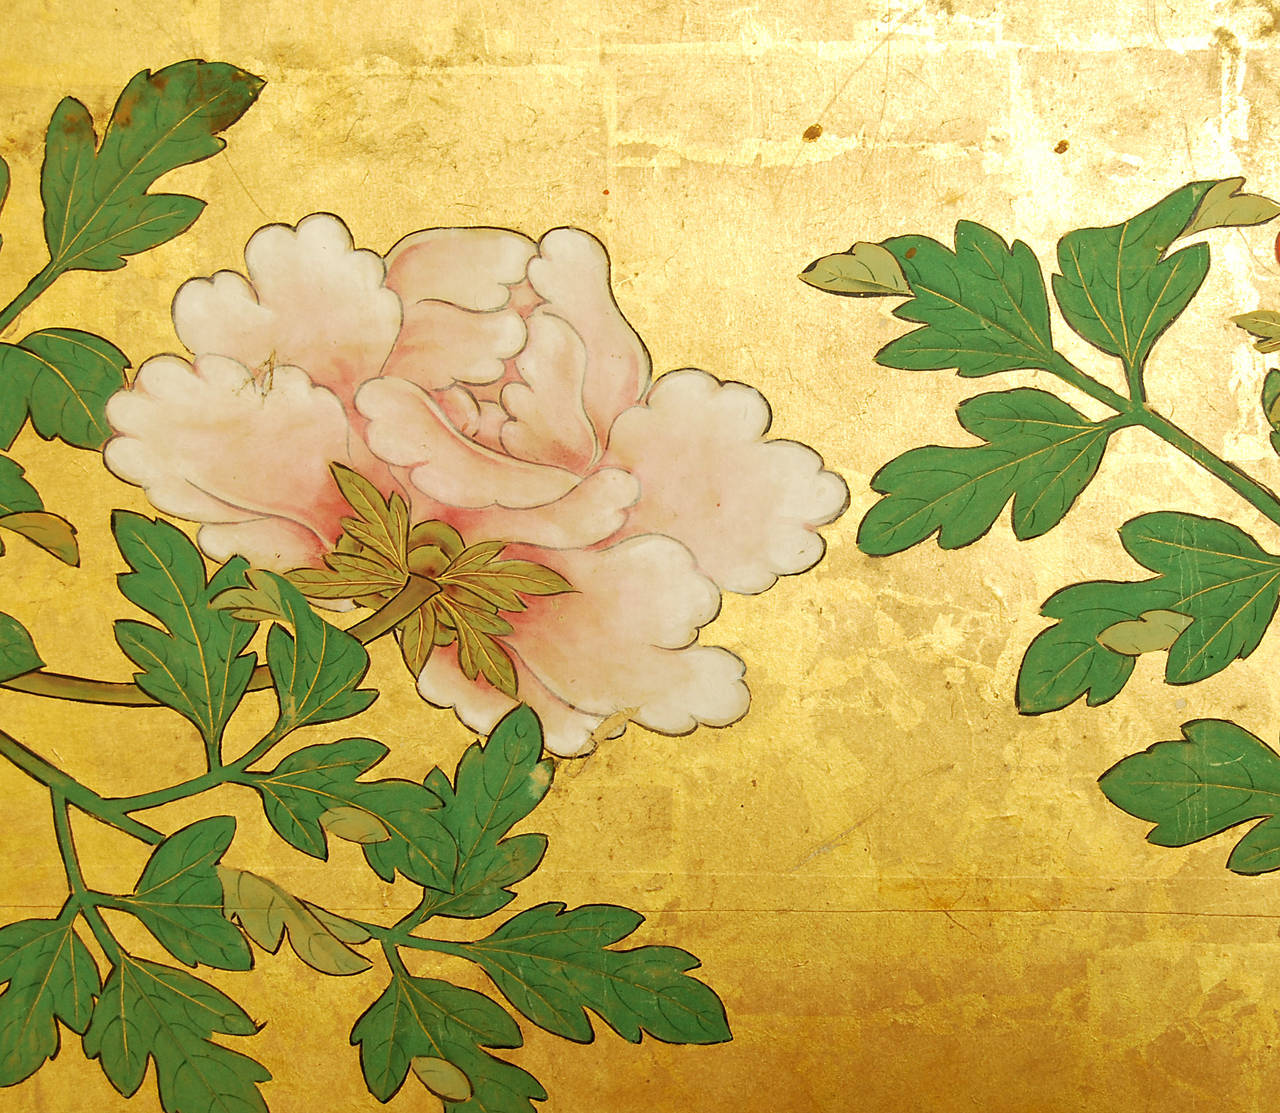 Päonien-Landschaftsschirme der Kano-Schule aus dem späten 17. Jahrhundert. Einer von zwei signierten Bildschirmen: Hogan Josen Fujiwara Chikanobu Hitsu - Kano Chikanobu (Shushin) (1660 - 1728).

MATERIALIEN: Tinte und Pigment auf Blattgold und